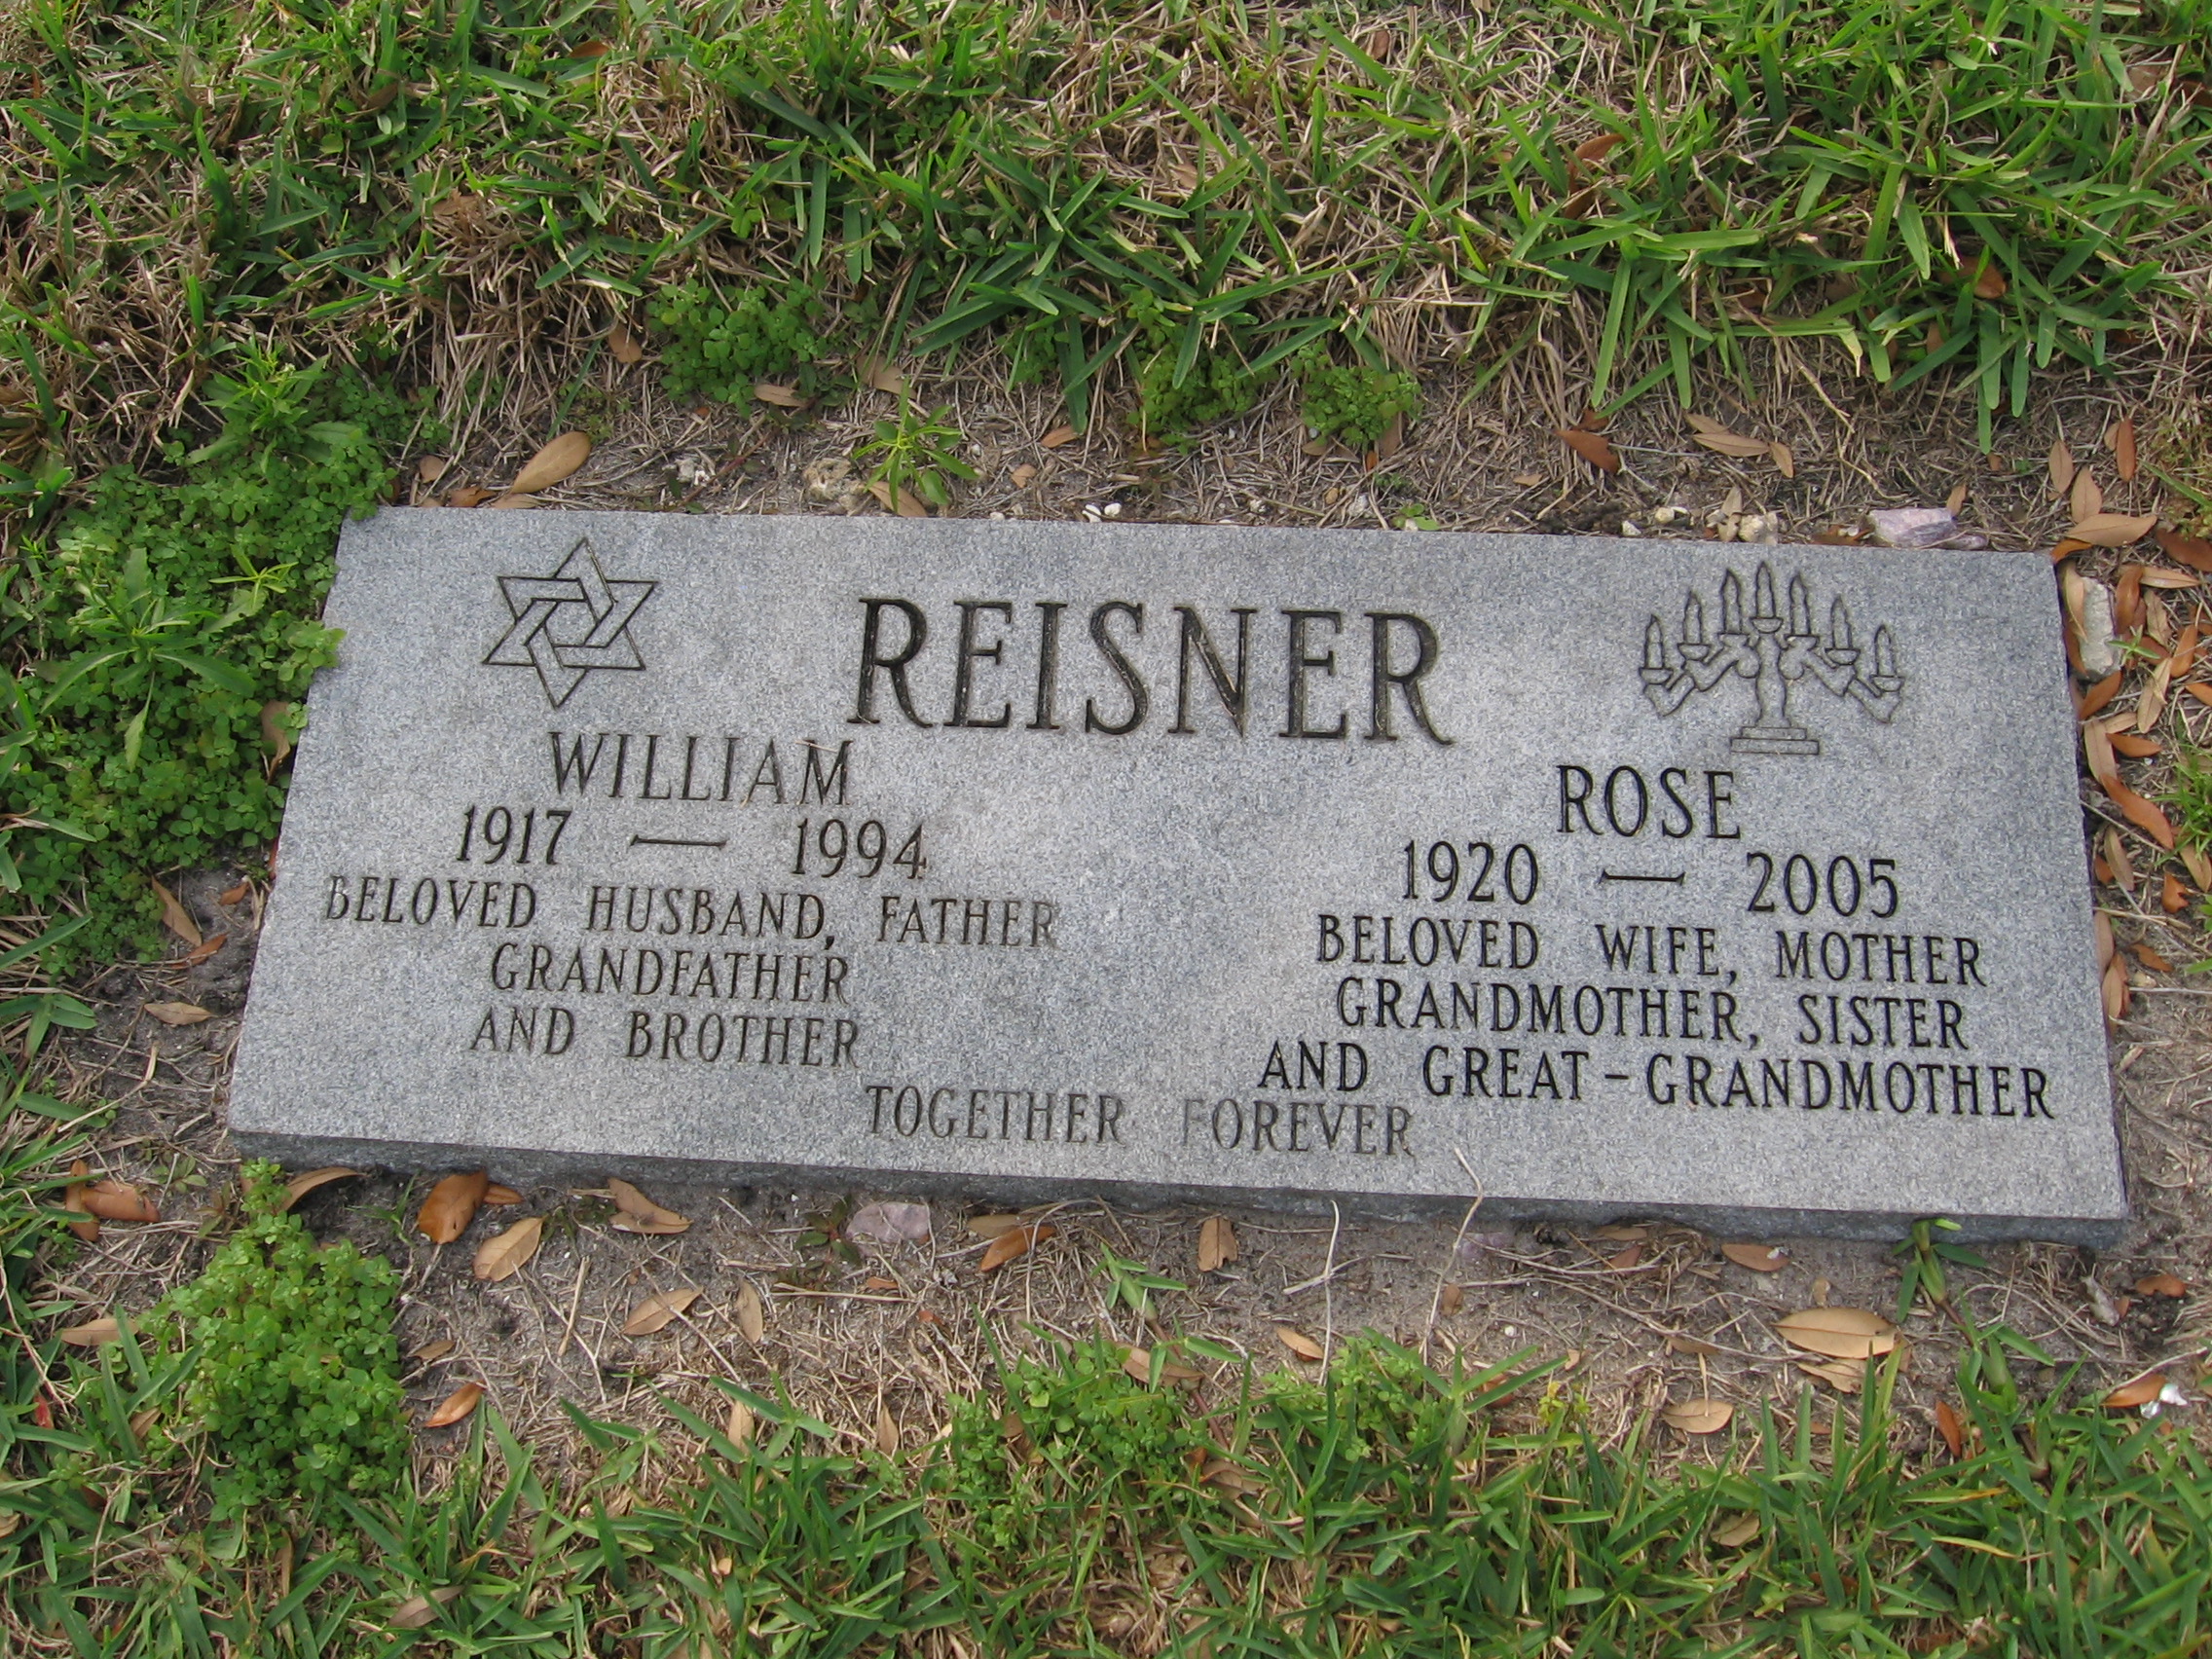 William Reisner